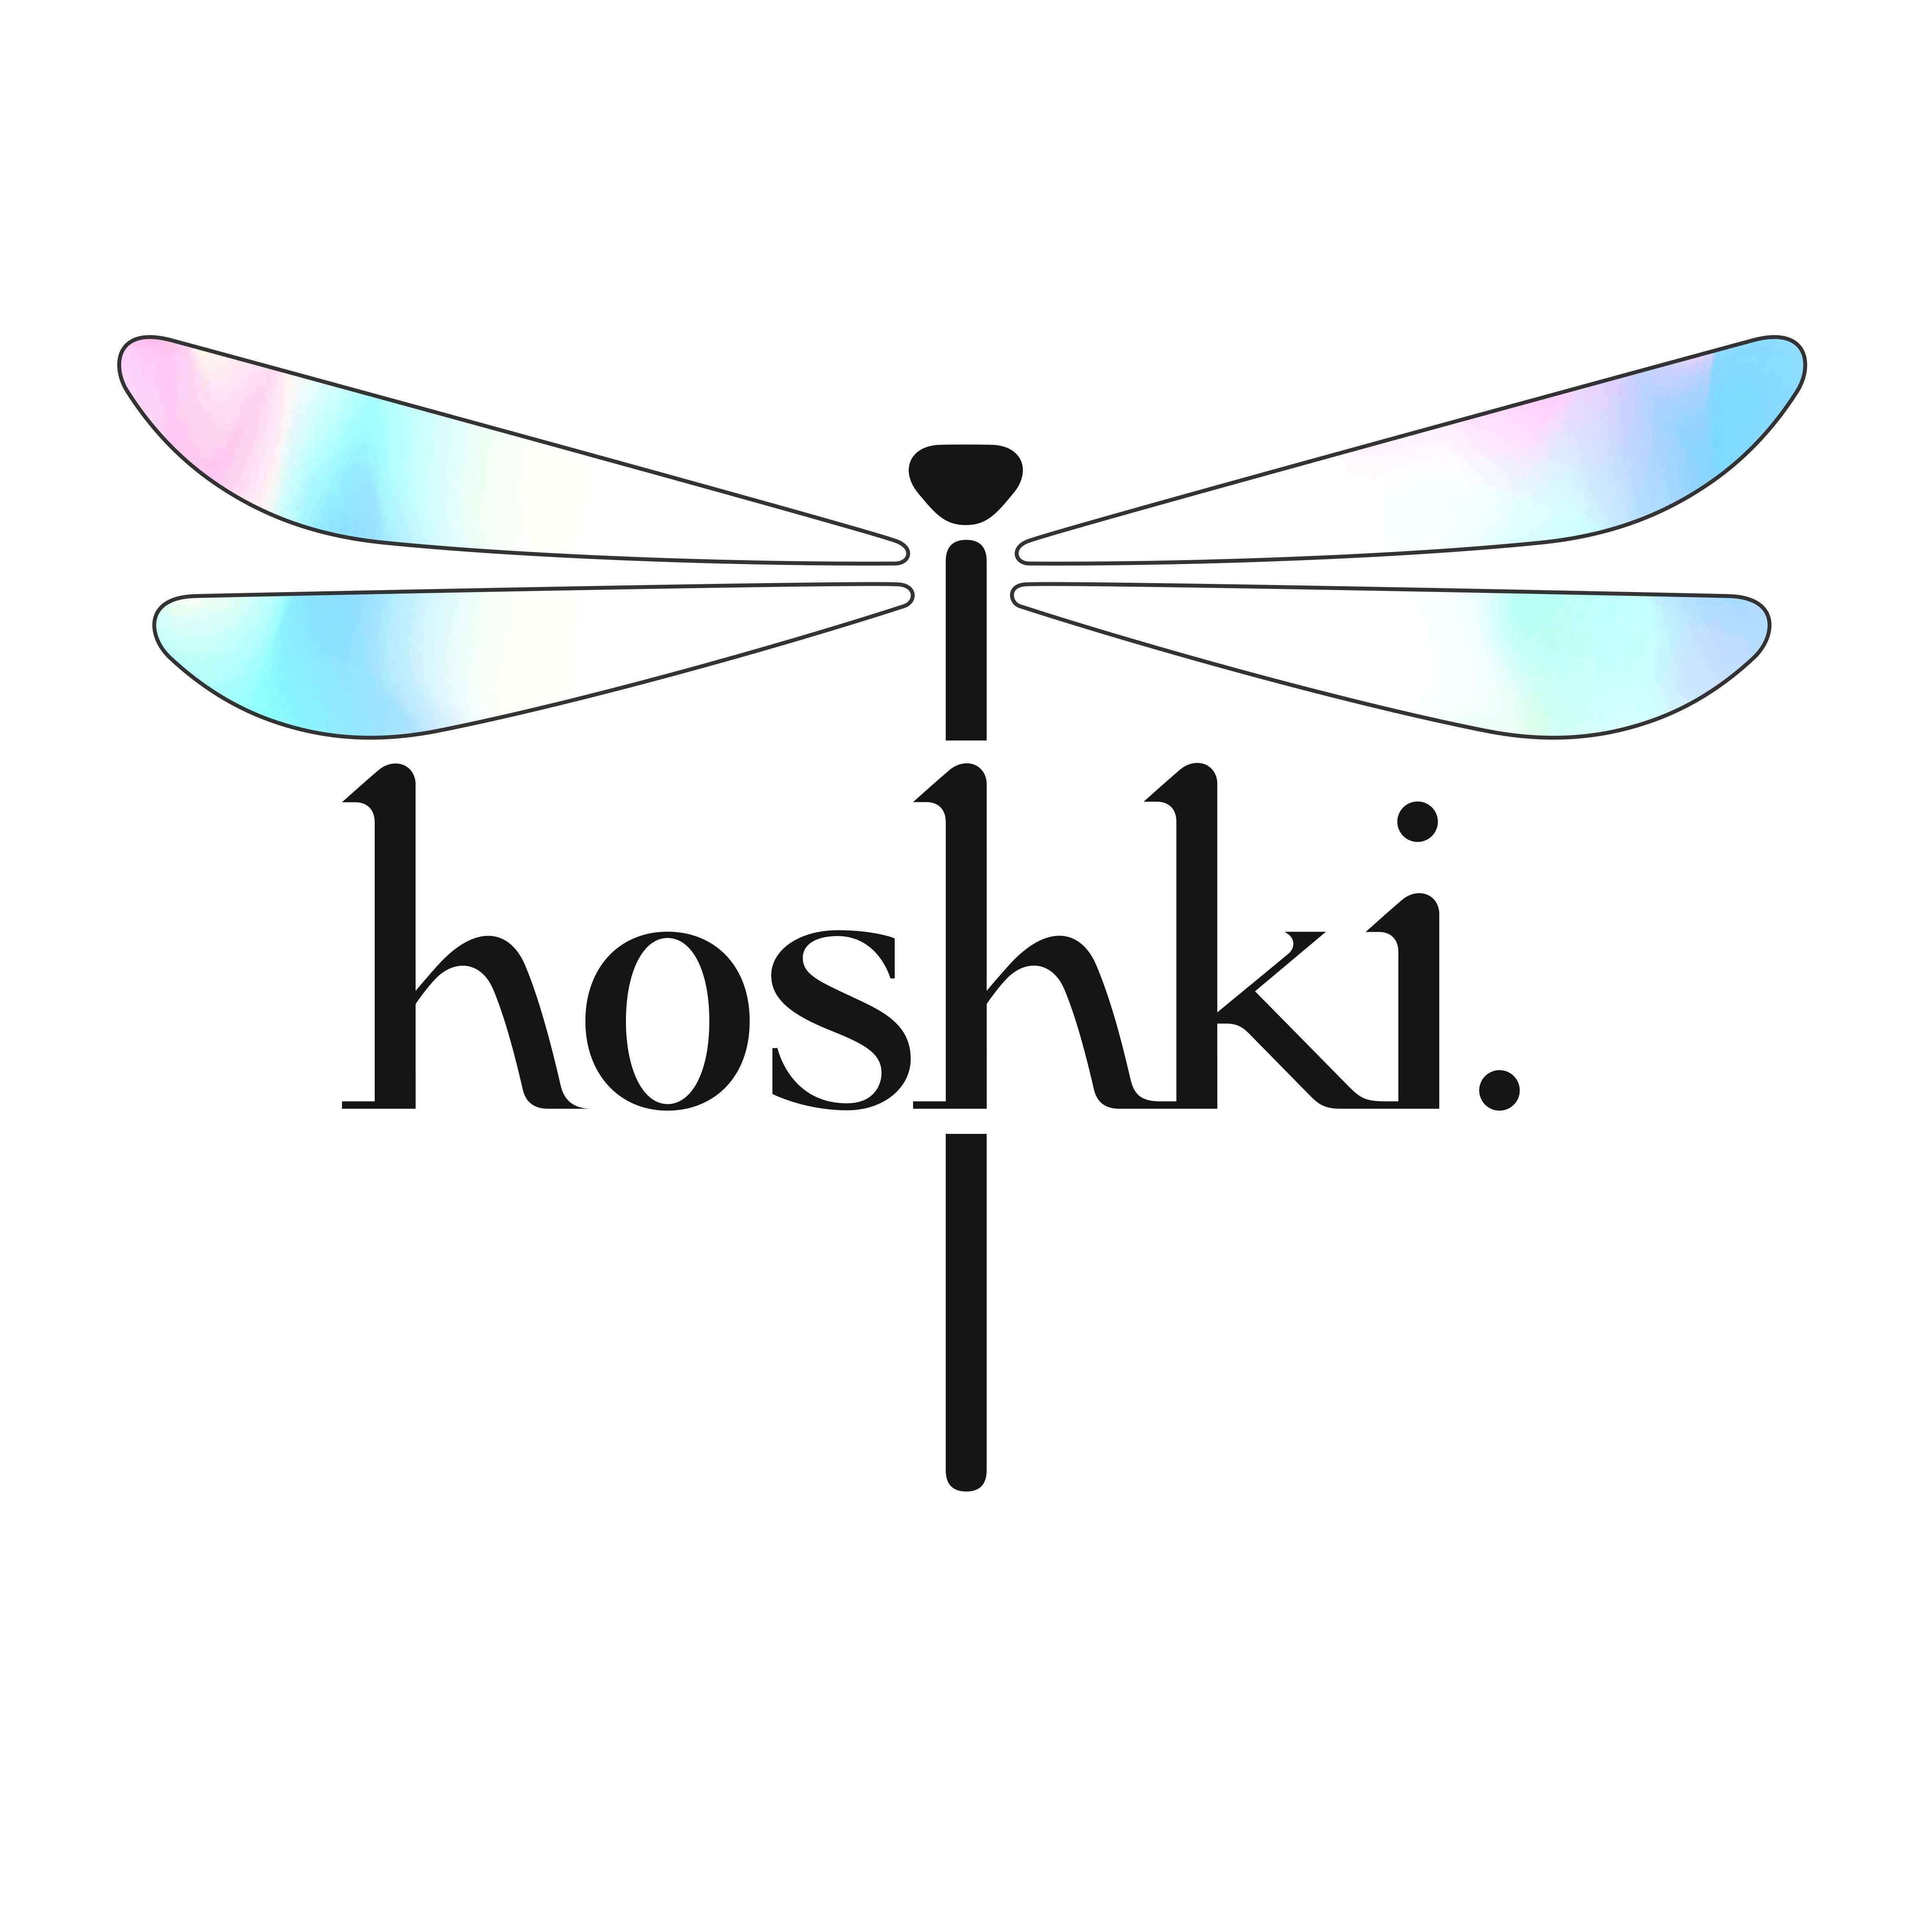 Hoshki